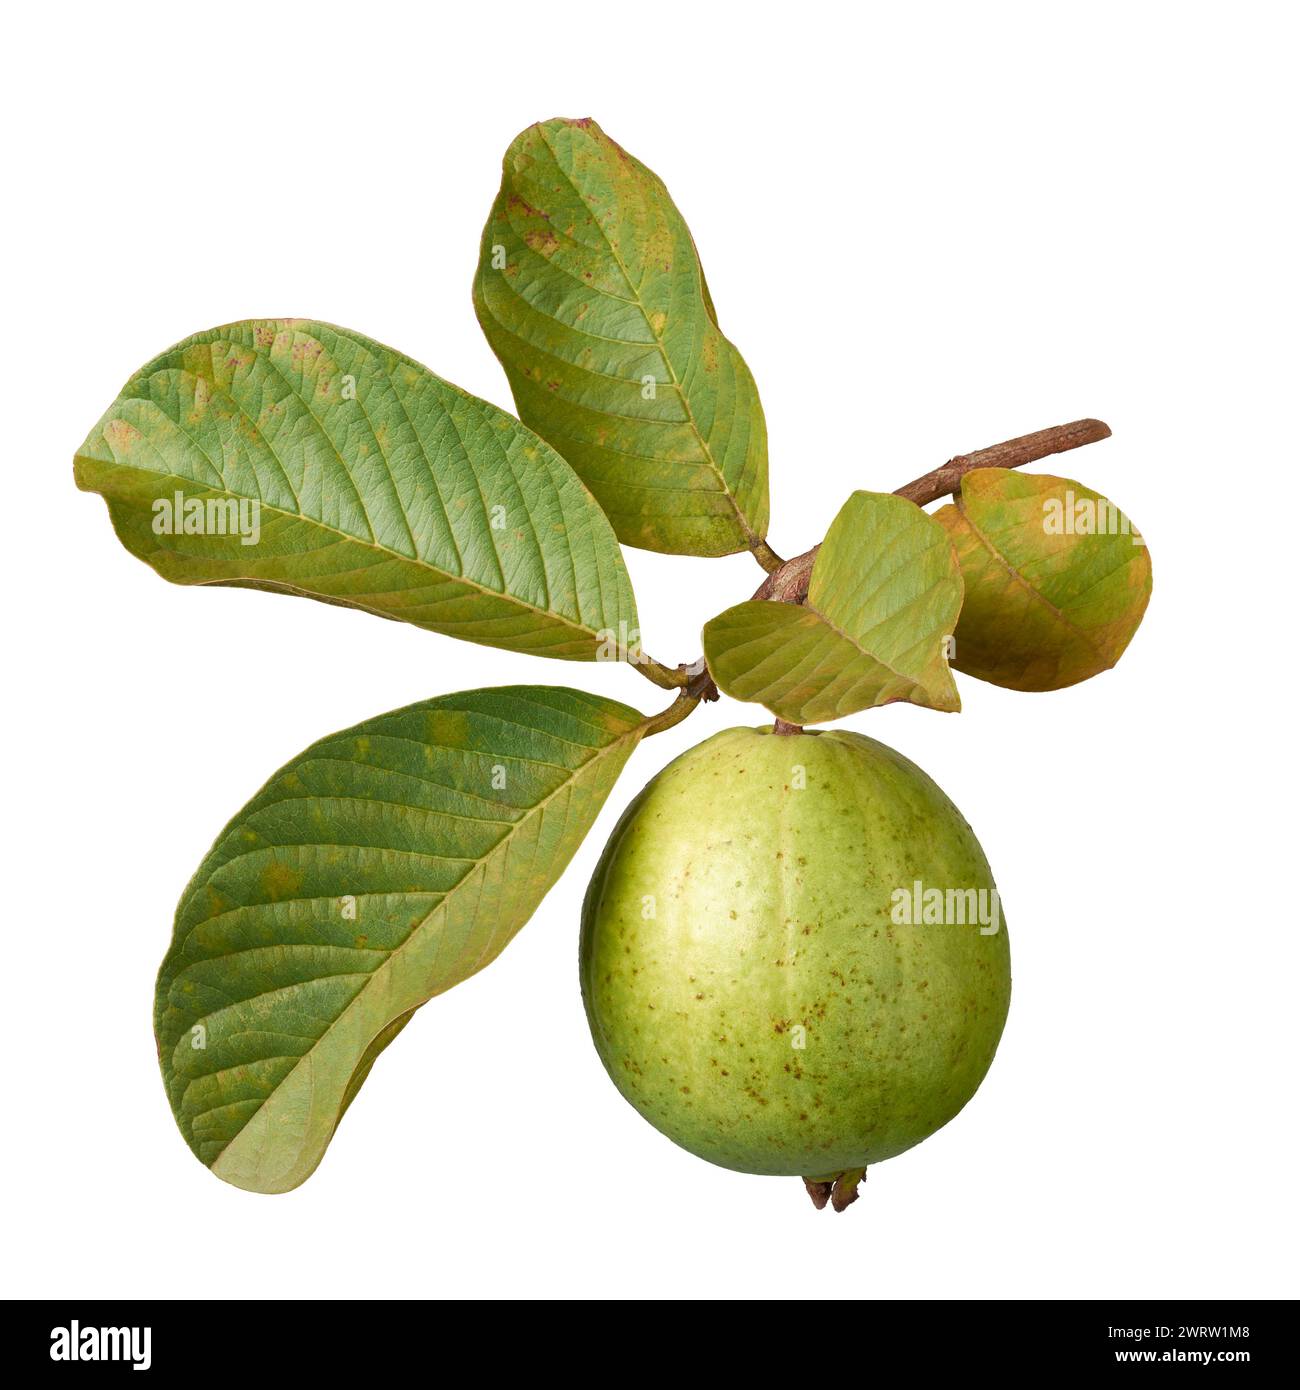 Guave mit ihrem Baumzweig isoliert auf weißem Hintergrund, oval geformte gewöhnliche tropische und nährstoffreiche Früchte, die reich an Vitamin C und Ballaststoffen sind Stockfoto